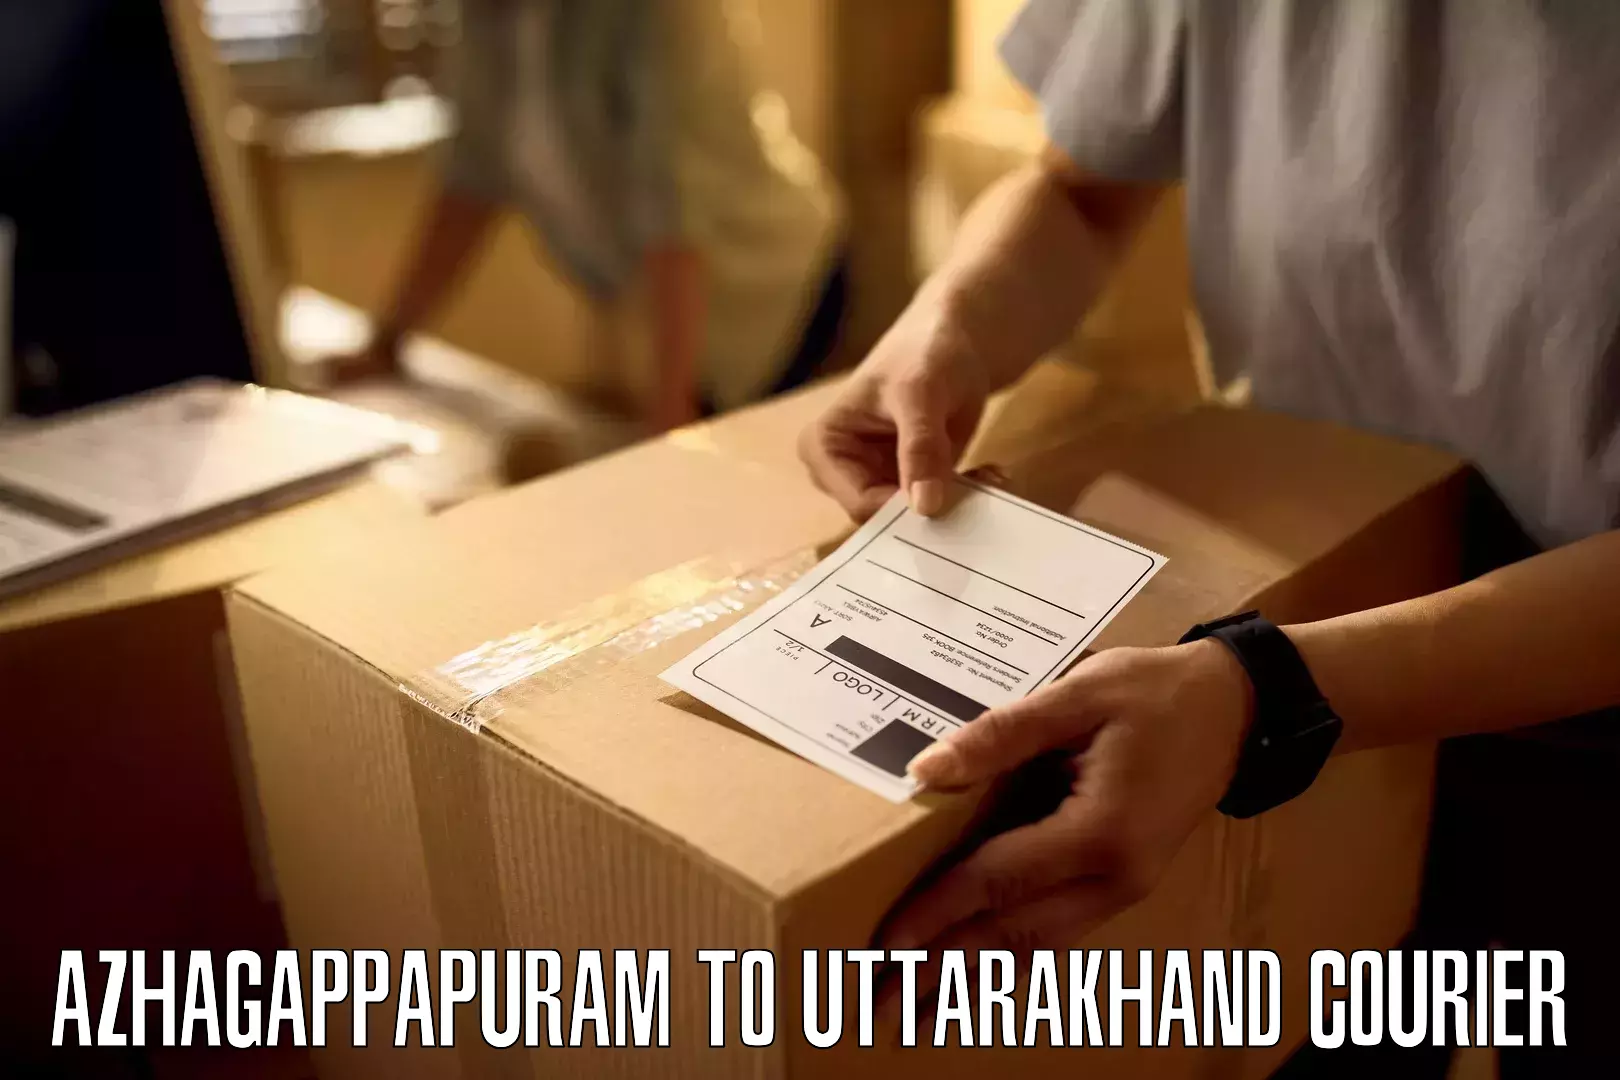 Special handling courier in Azhagappapuram to Uttarakhand